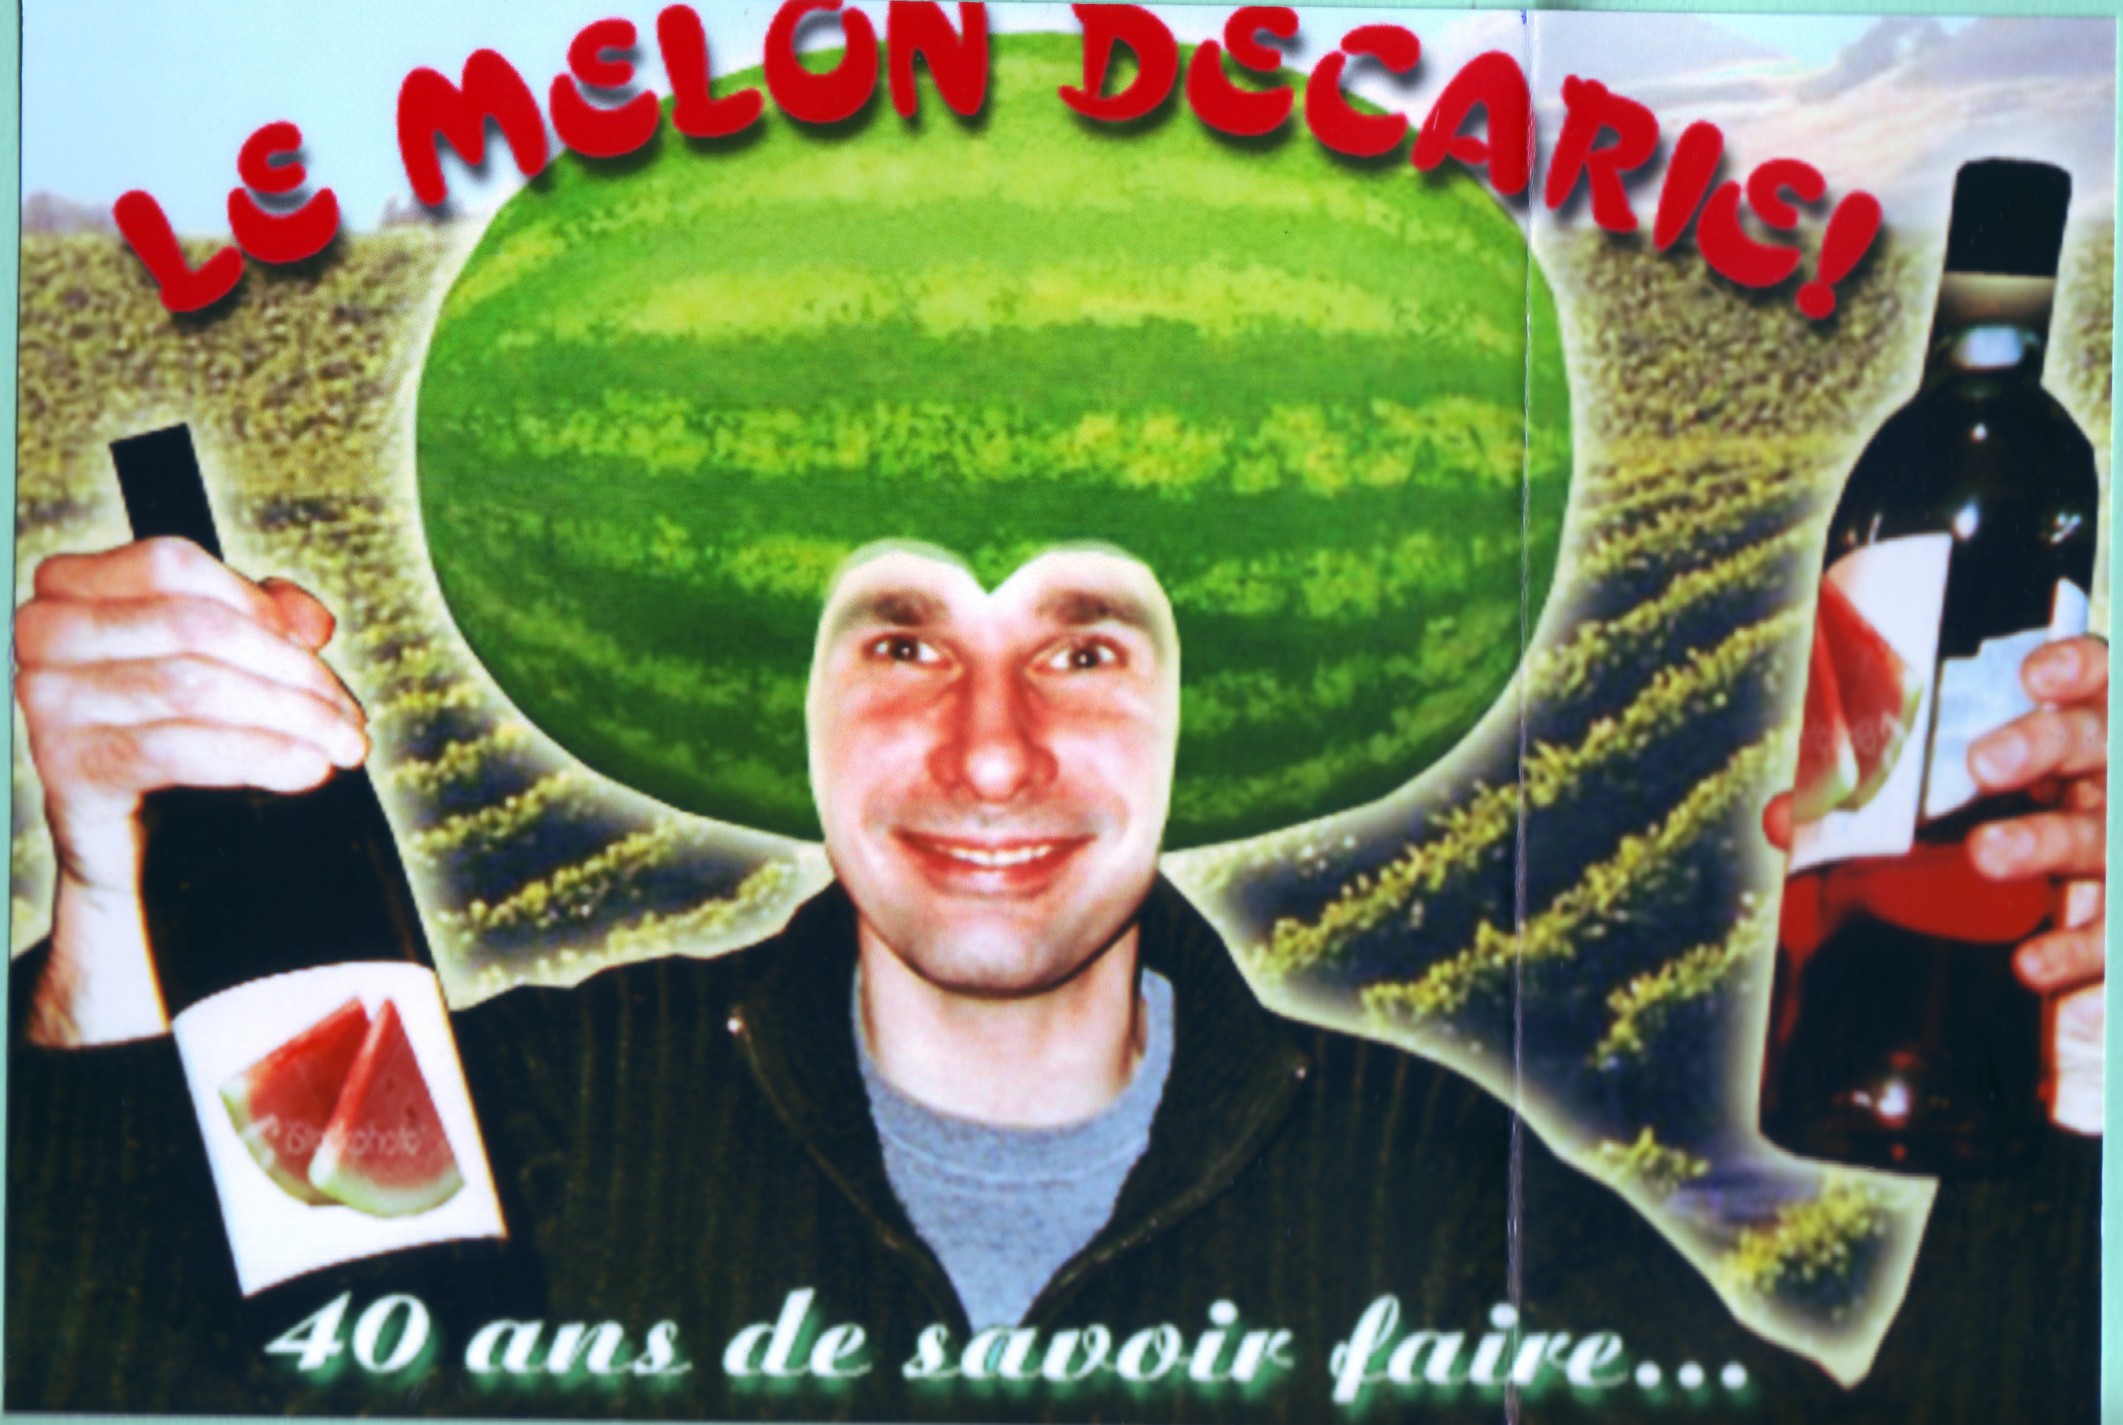 Le melon de Benoit Décarie